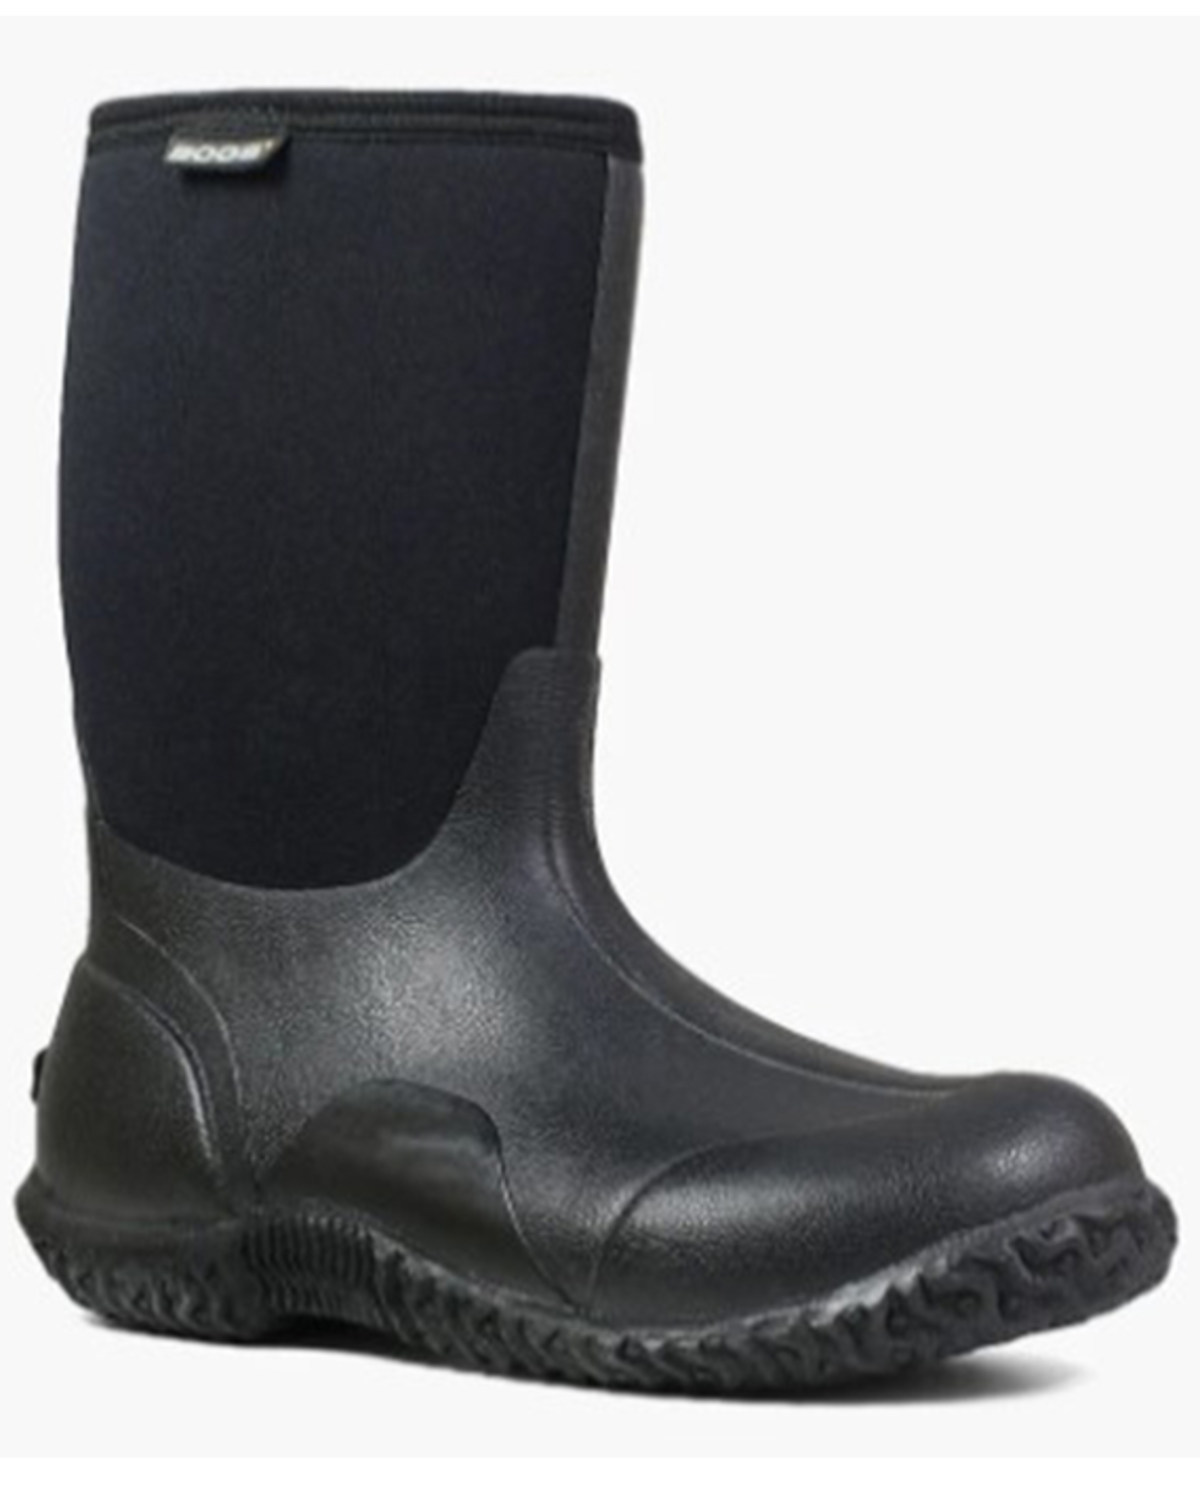 Bogs Women's Classic Mid Waterproof Winter Boots - Soft Toe